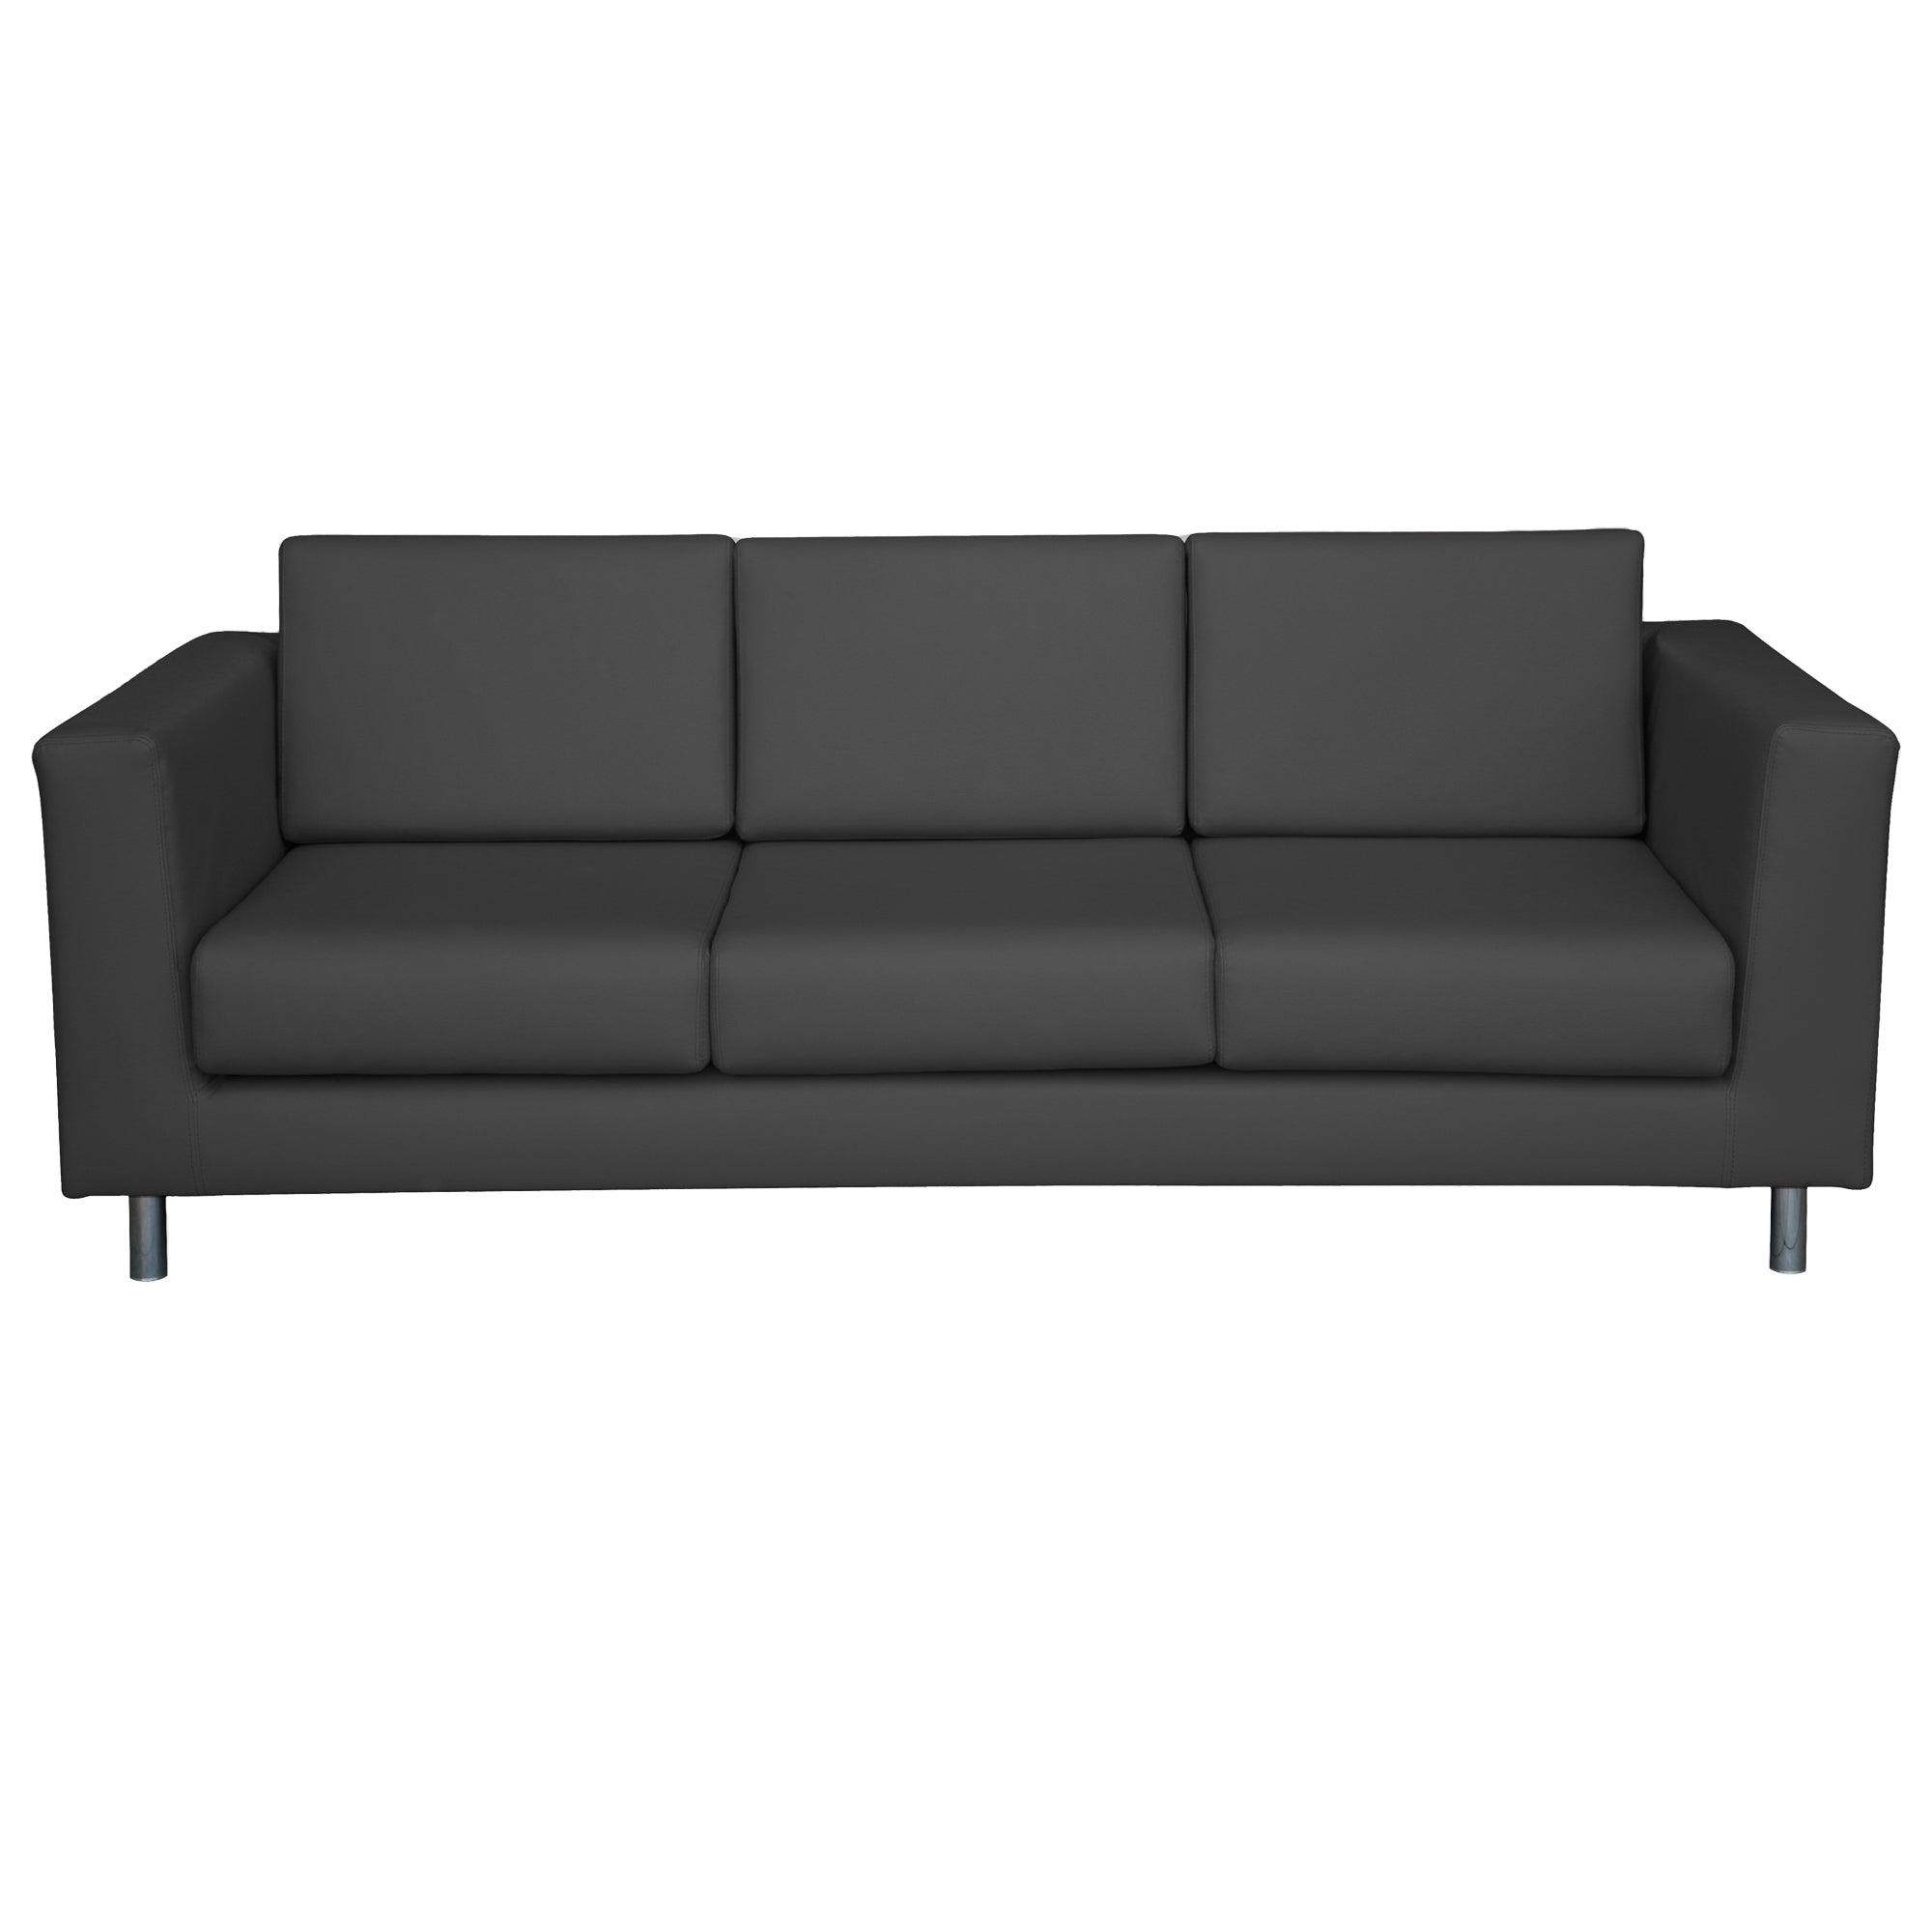 unisit-divano-erica-ek3-3-posti-nero-braccioli-inclusi